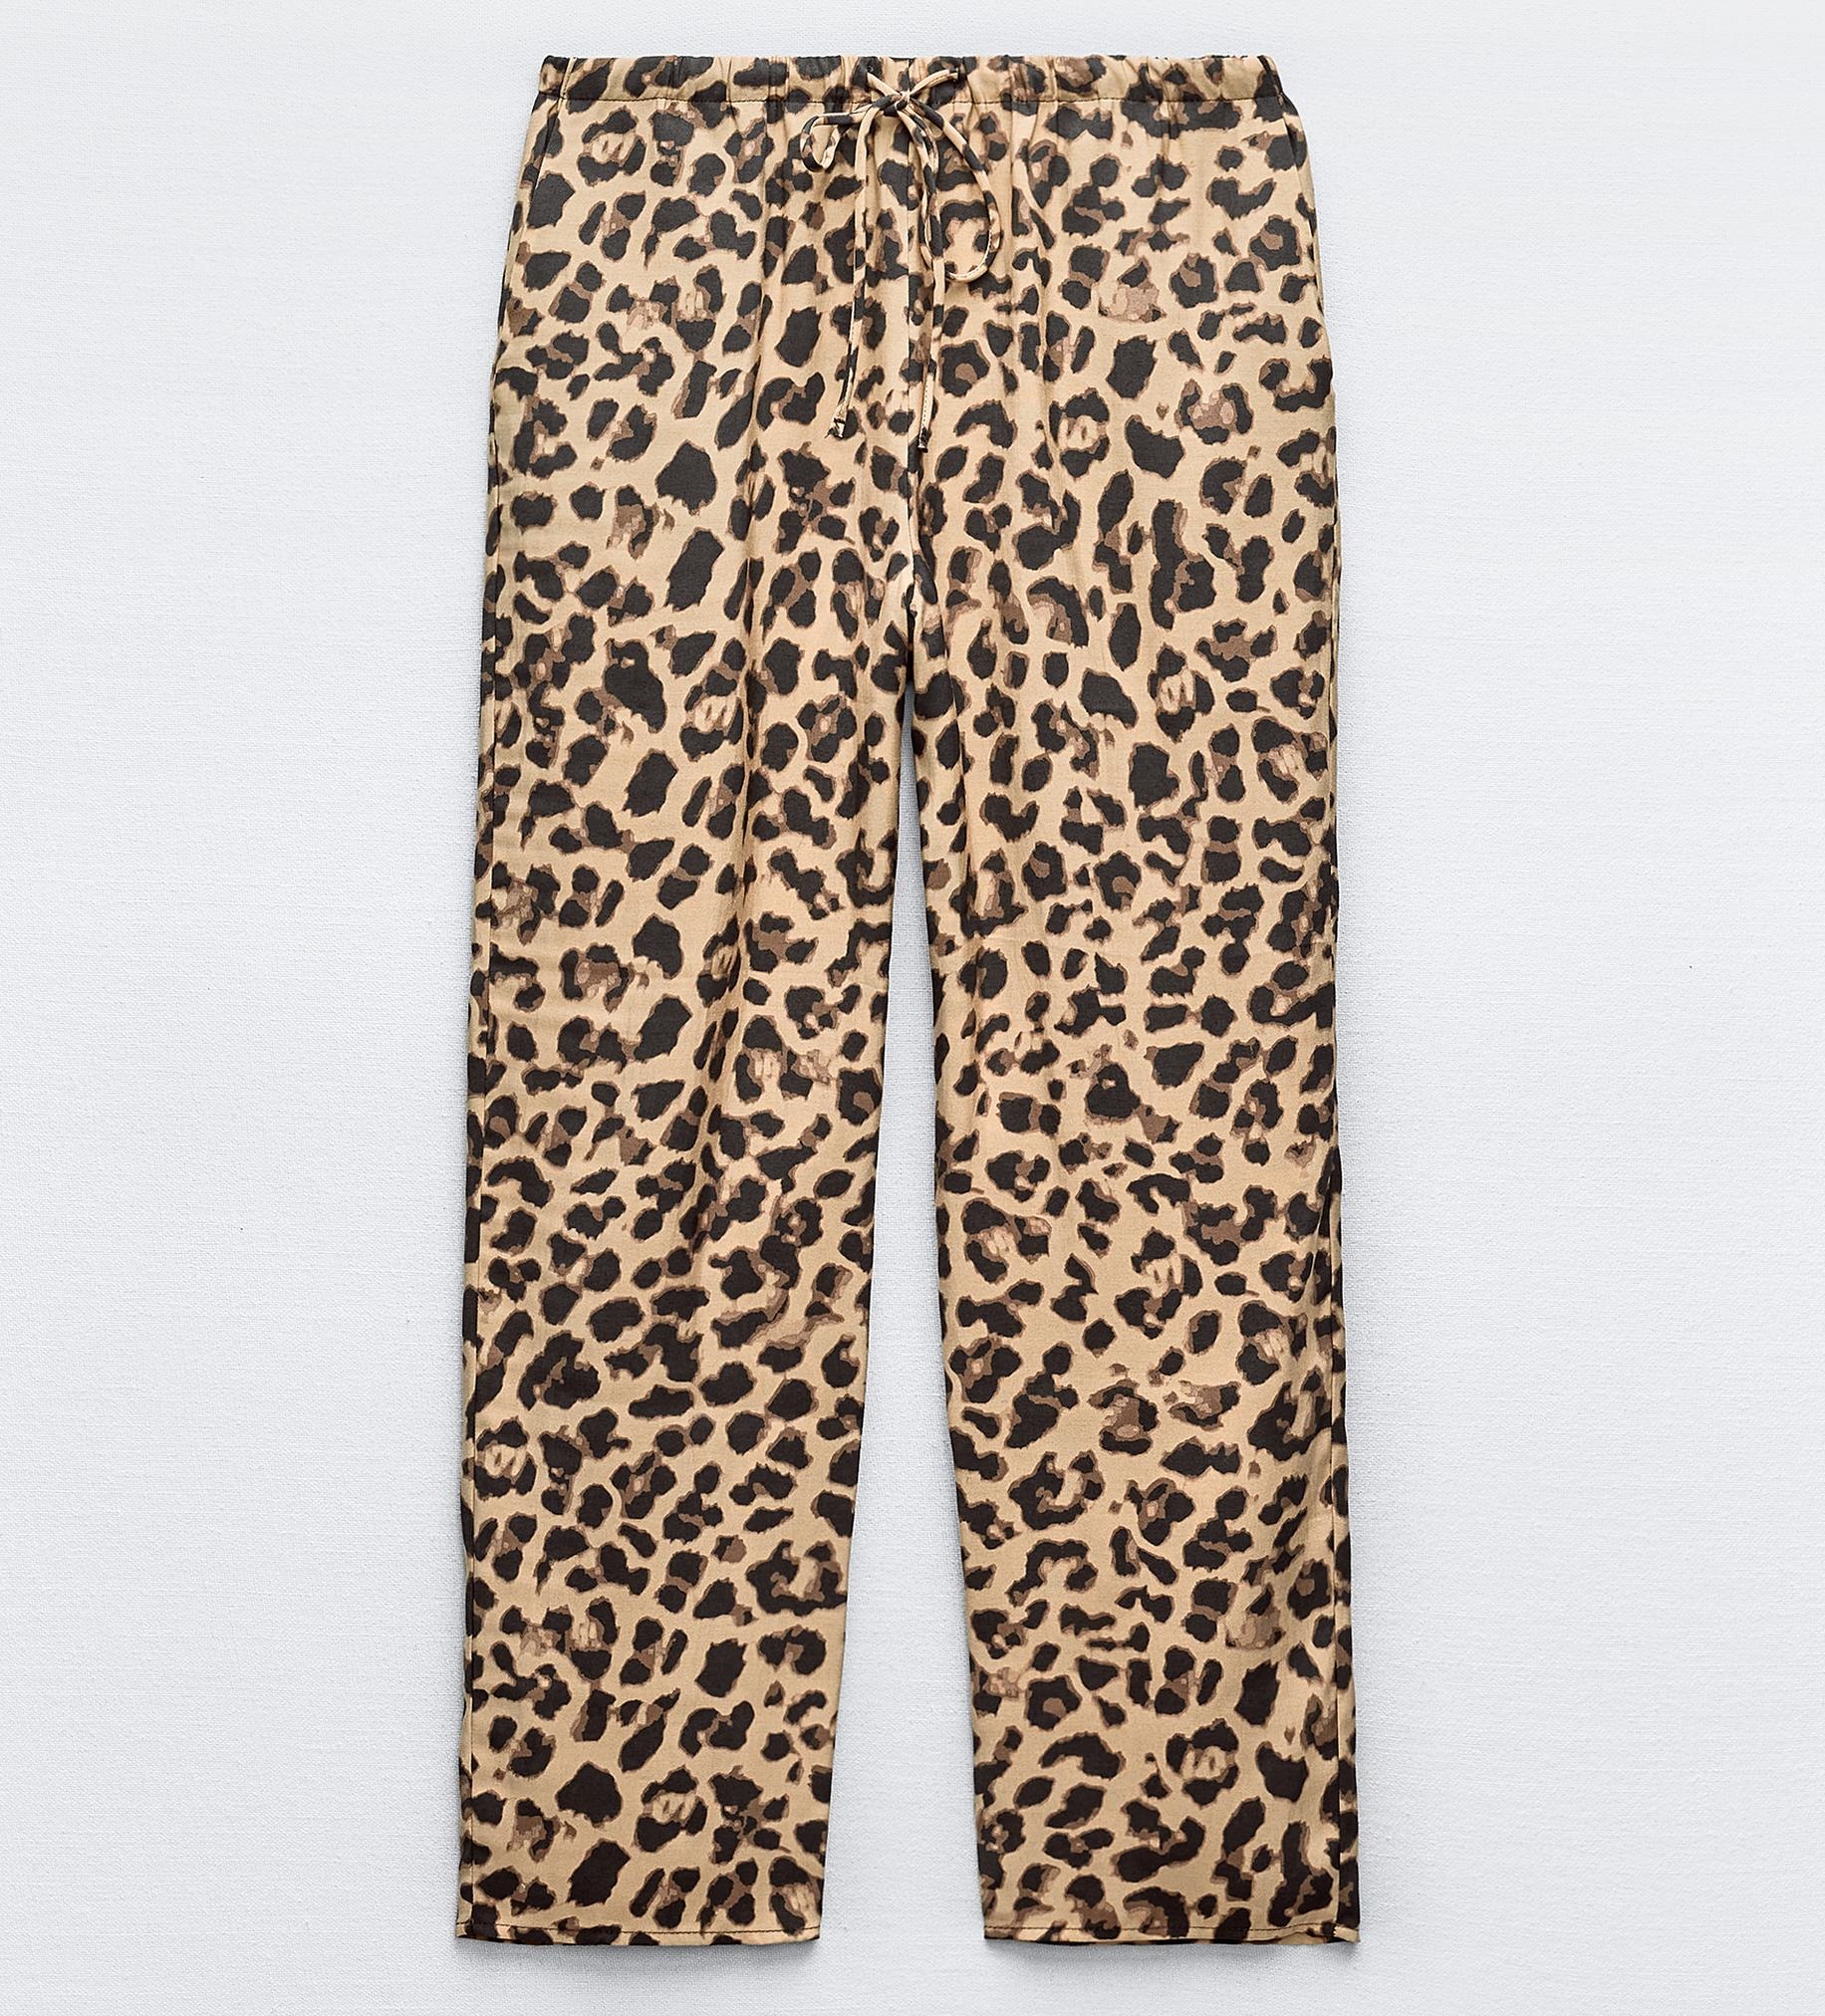 Брюки Zara Animal Print, коричневый брюки zara bandana print черный белый